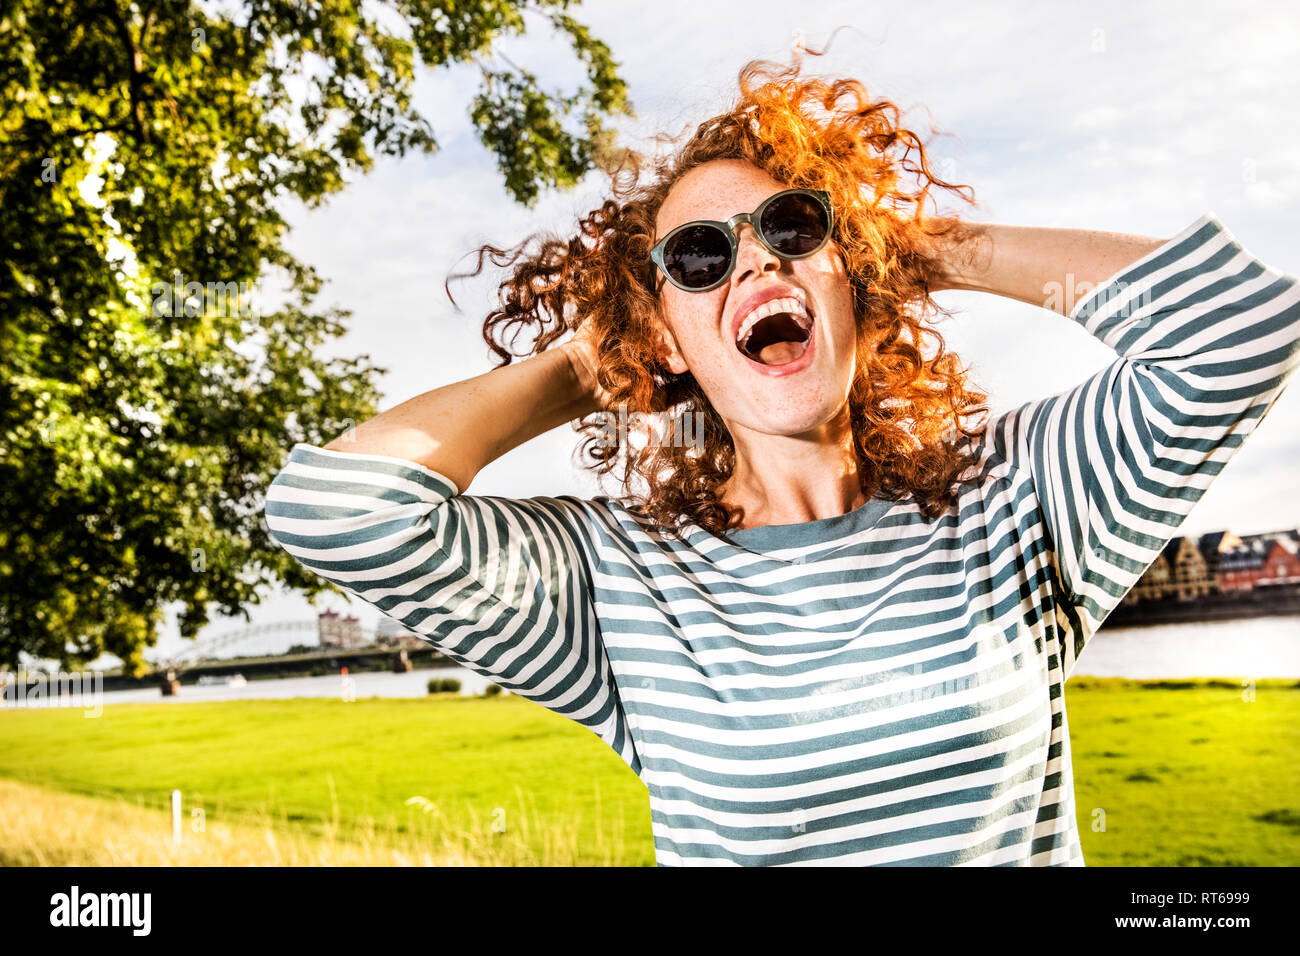 Allemagne, Cologne, portrait de jeune femme rousse hurlant wearing sunglasses Banque D'Images